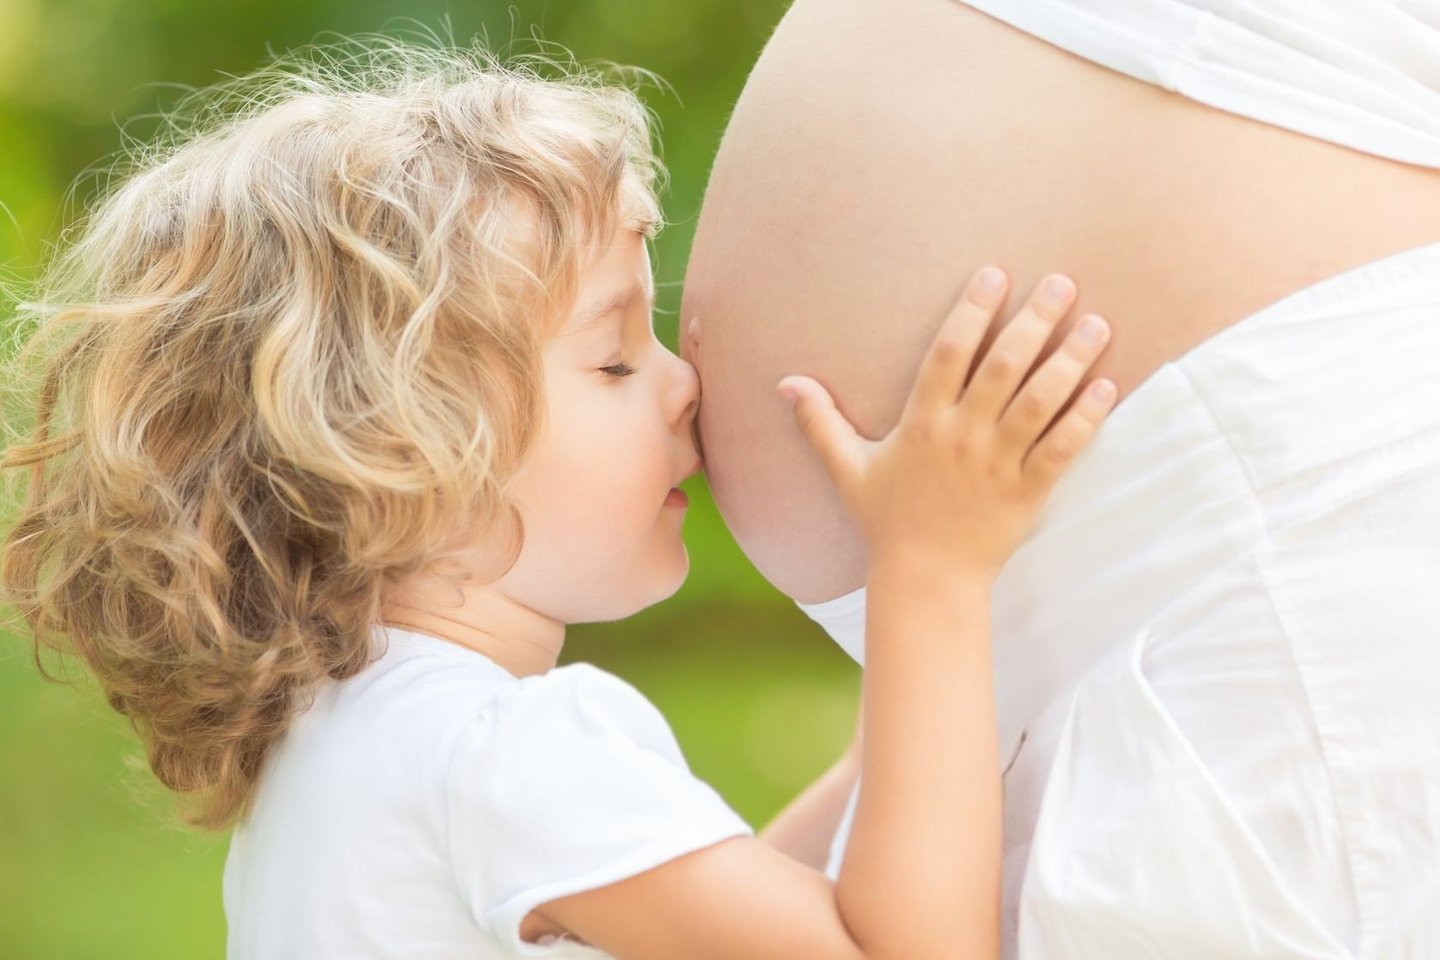 Kiekvienos moters organizmas į pokyčius nėštumo metu reaguoja skirtingai, bet daugiavaisis nėštumas, didelis kūdikis, genetiniai veiksniai gali lemti kur kas didesnį pilvo raumenų prasiskyrimą.<br>123rf nuotr.